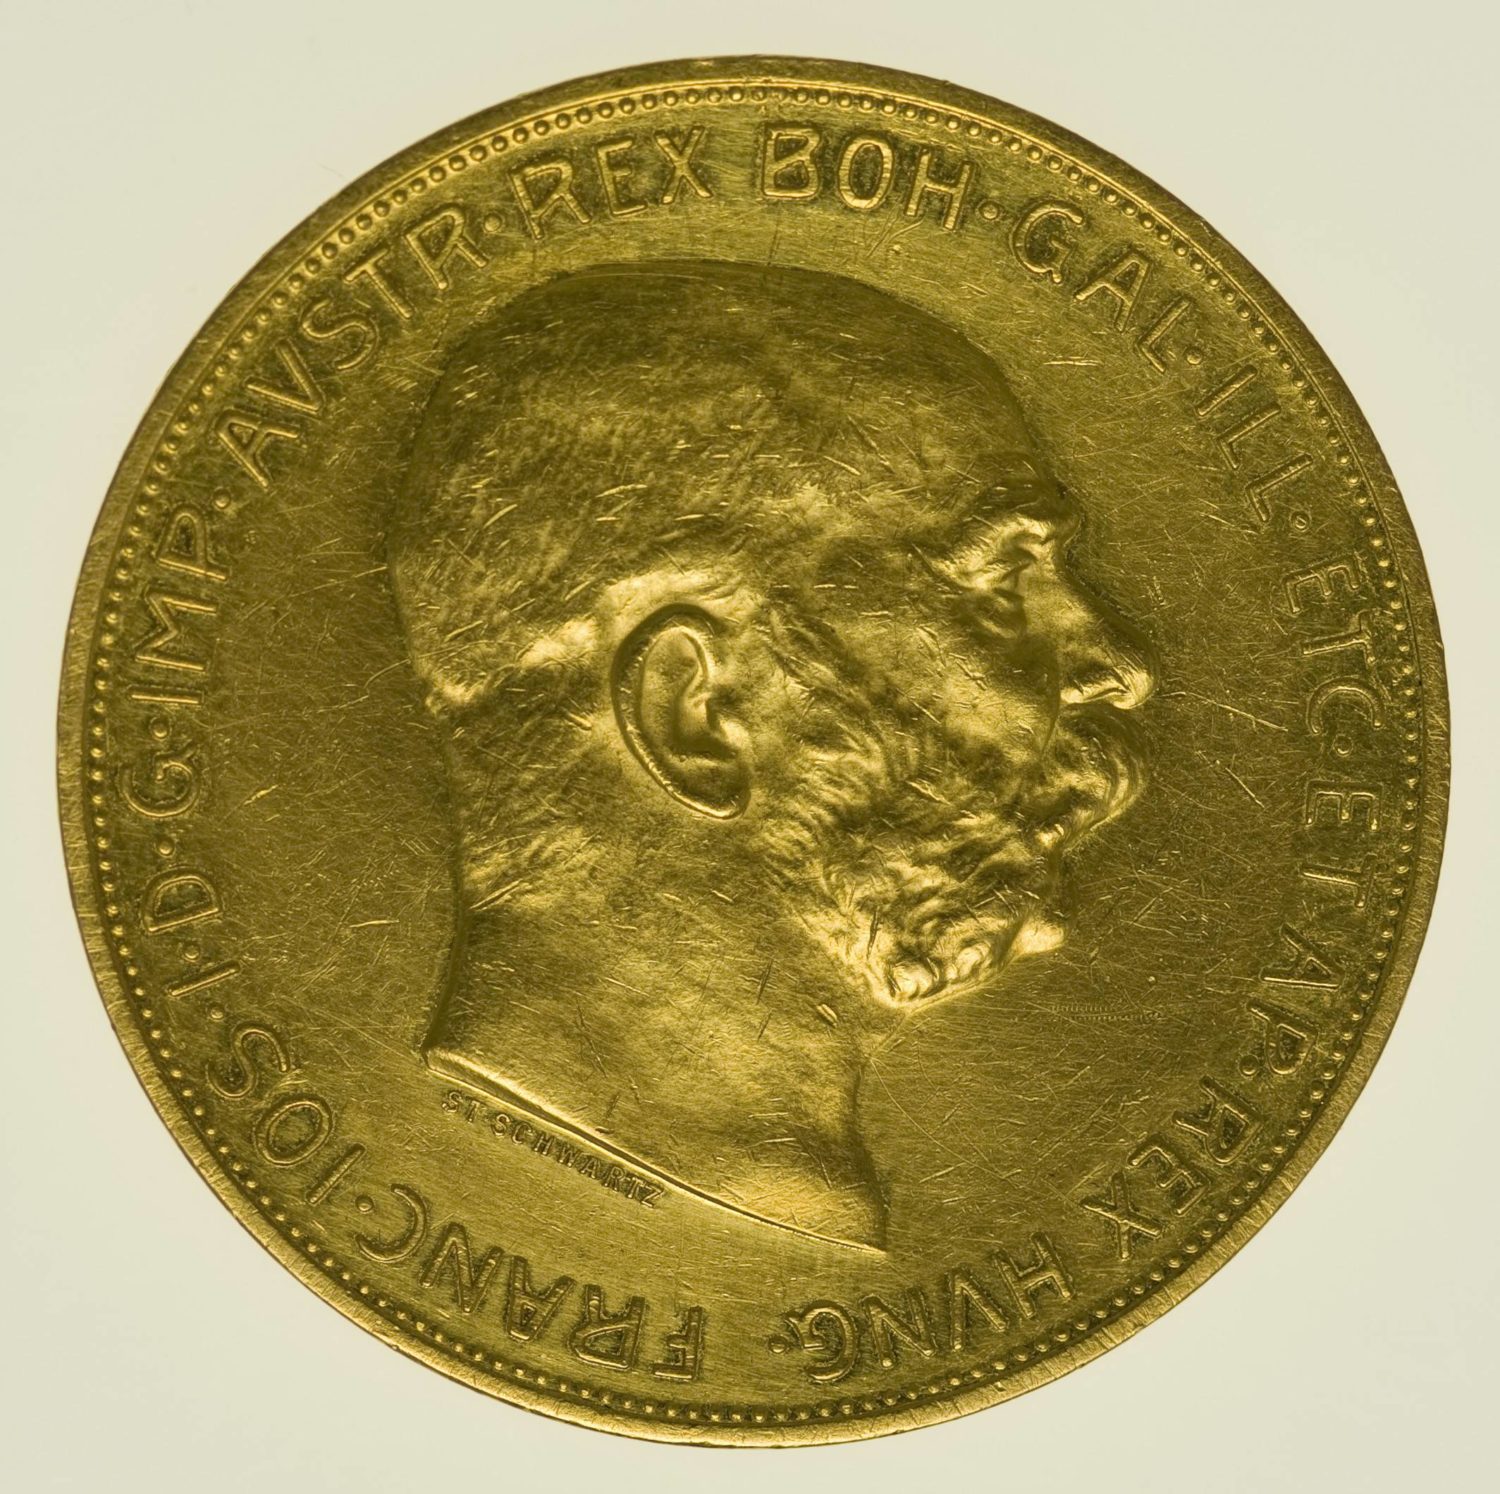 Österreich Franz Joseph I. 100 Kronen 1910 Gold 30,49 Gramm fein RAR